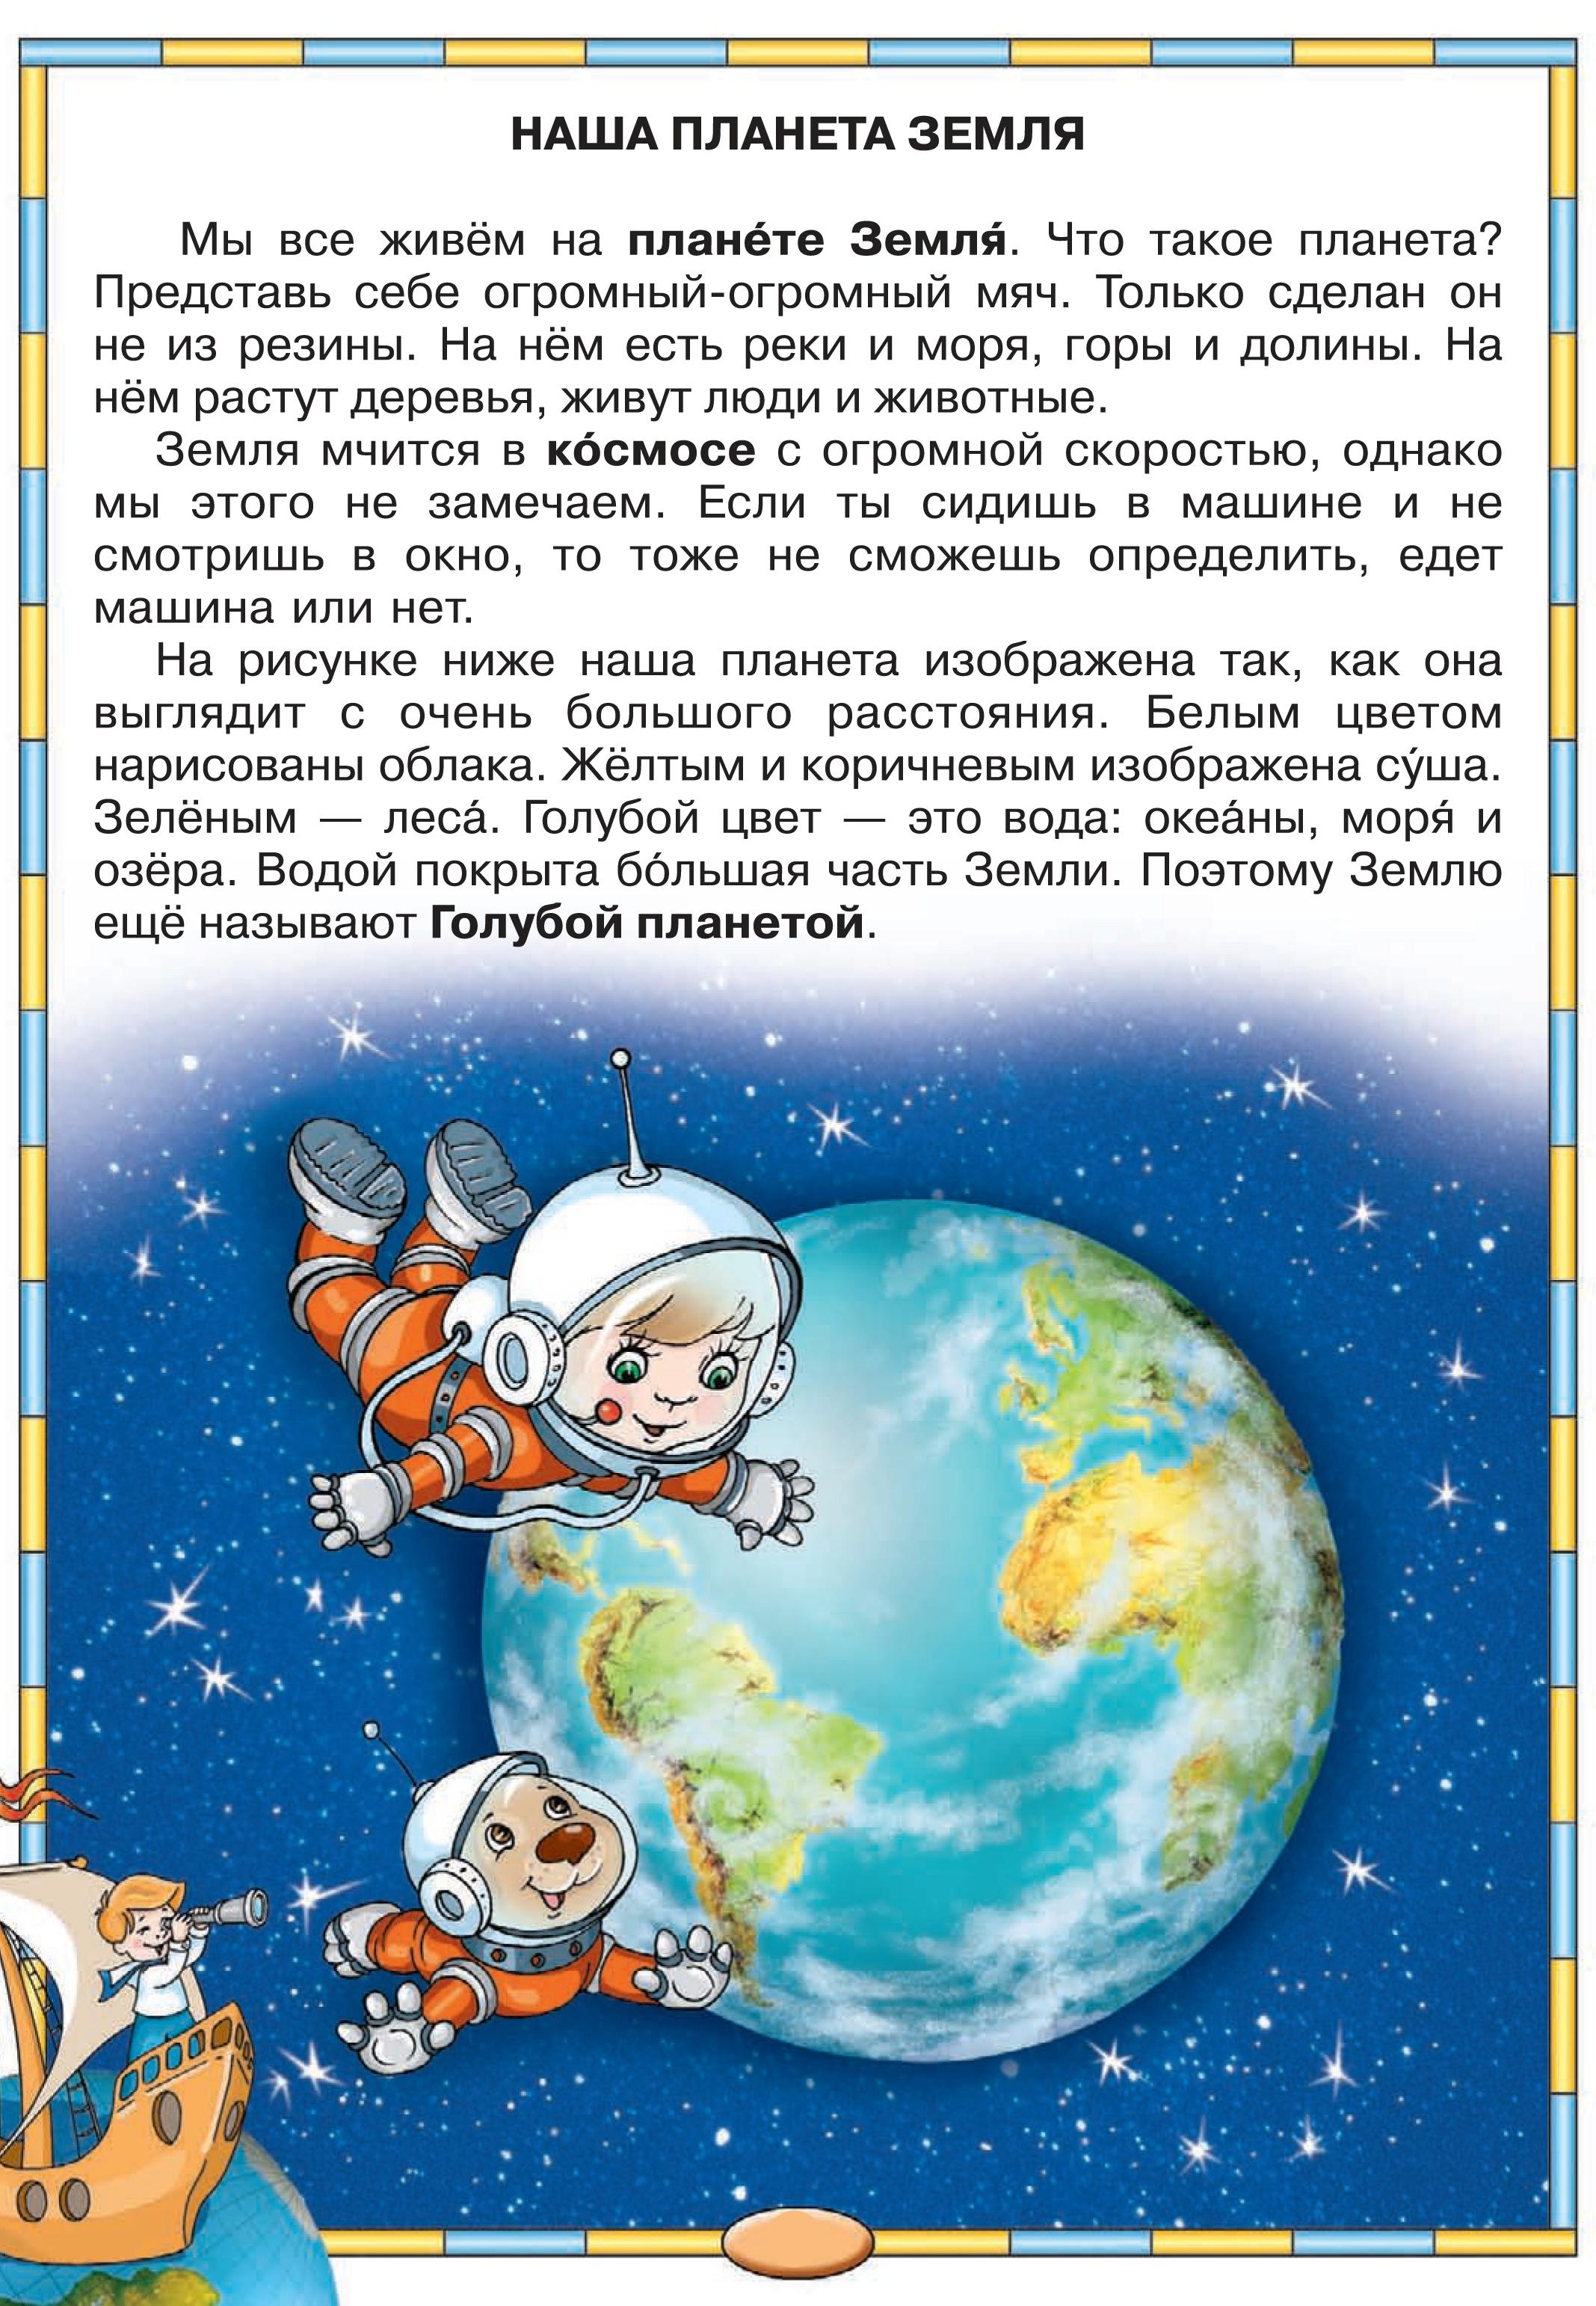 Читаем про космос детям 6 лет. Расскажите детям о космосе для дошкольников. Сказка про космос для детей. Рассказы о космосе для малышей. Что рассказать детям о космосе.